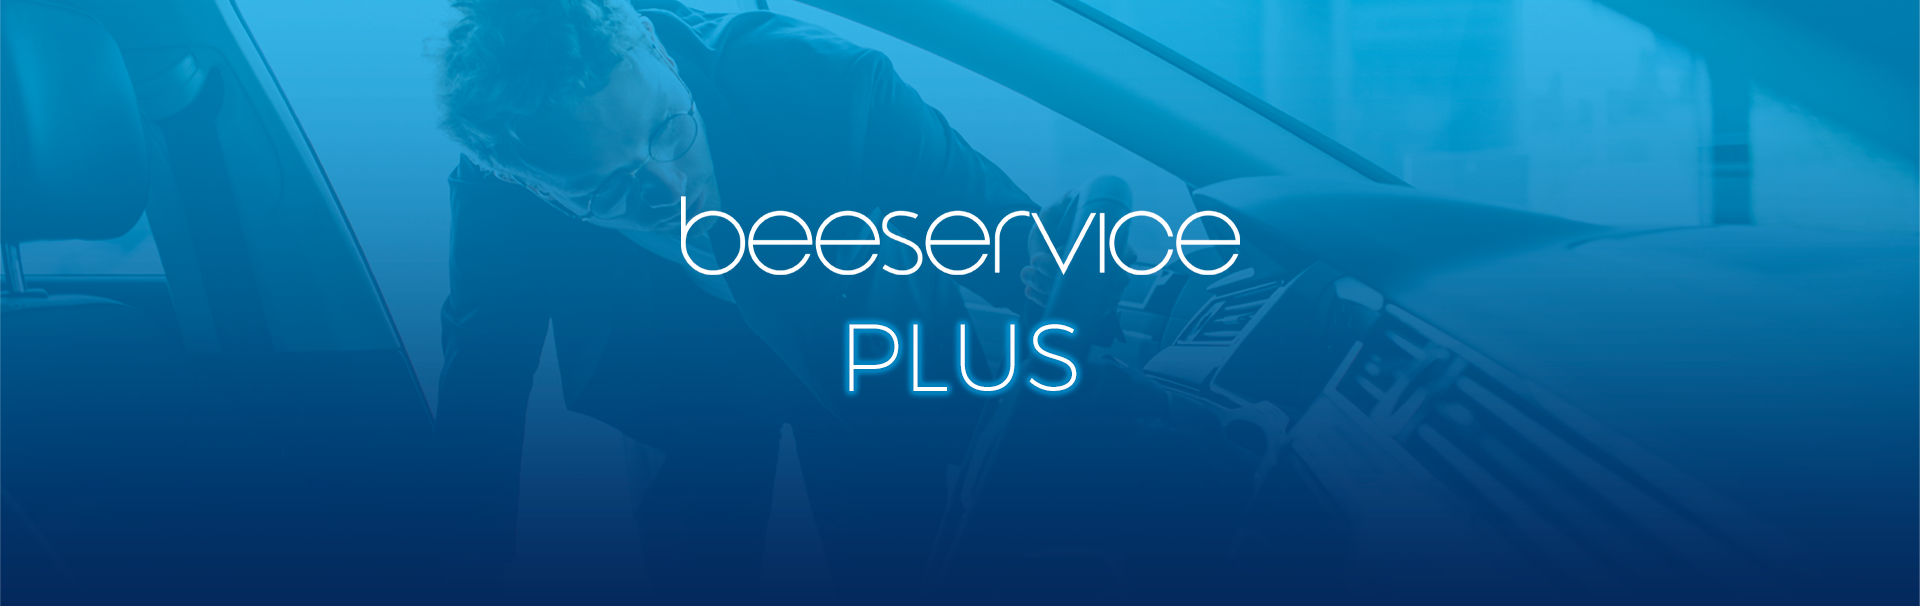 BeeServiceplus la soluzione per semplificare i processi di riparazione del veicolo